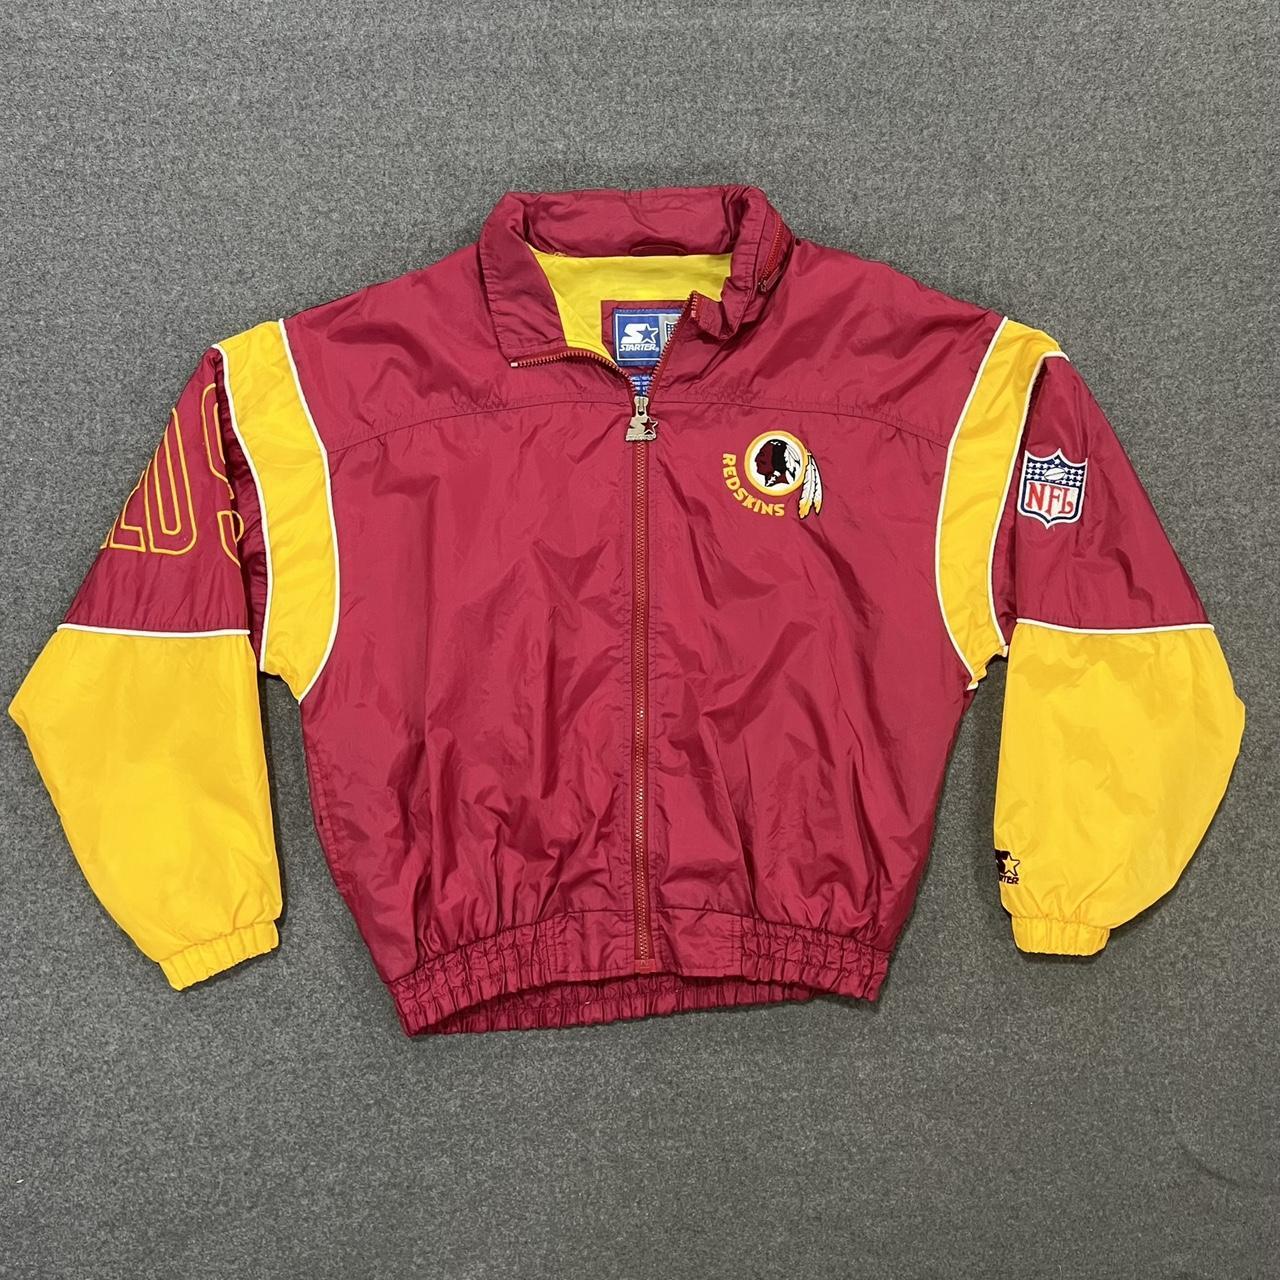 Vintage Detroit Redwings jacket by G3 by carl banks - Depop